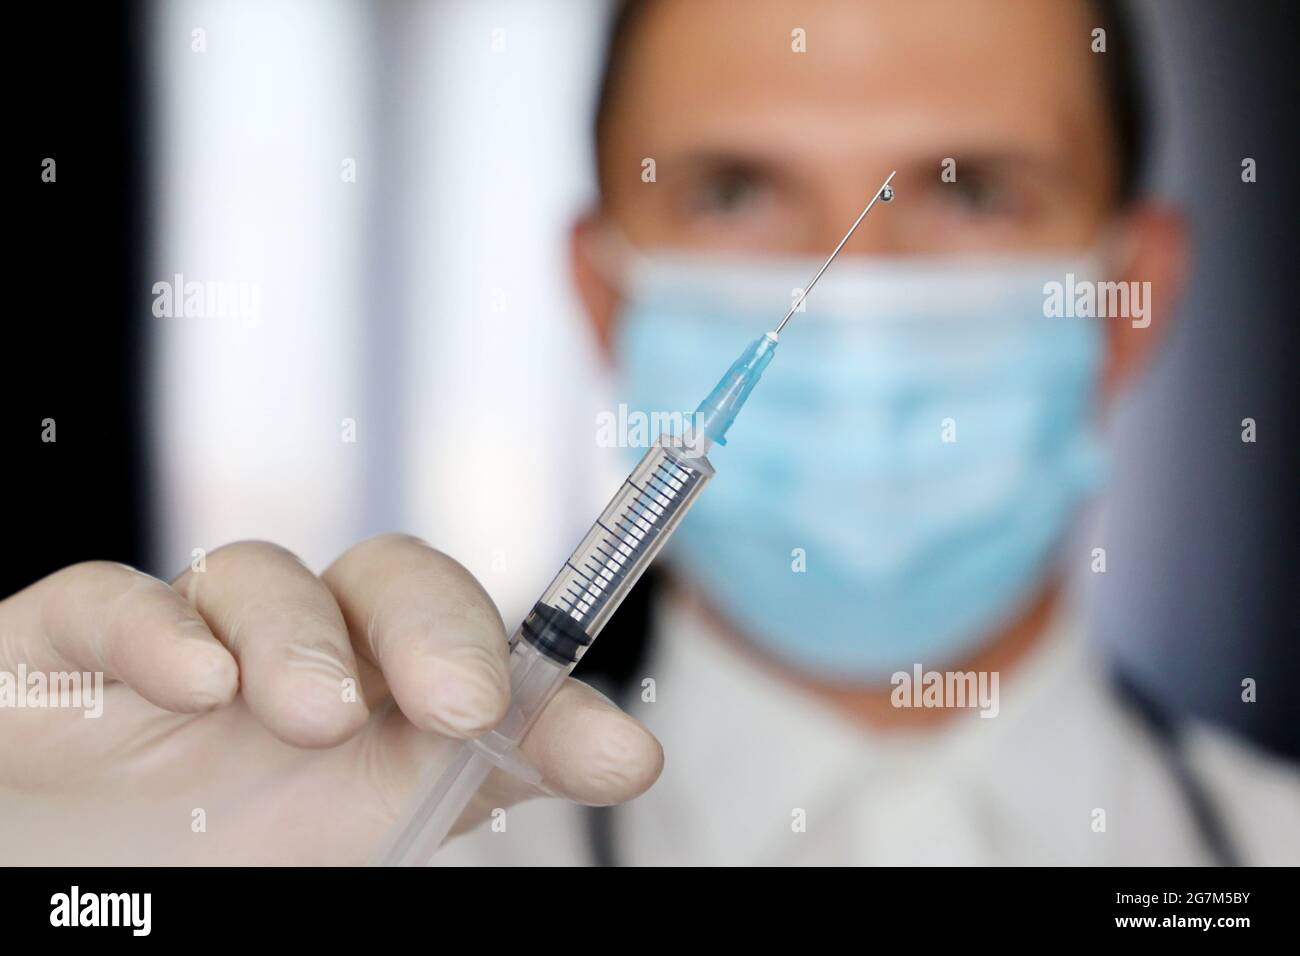 Médecin avec seringue en main, homme dans un masque médical se préparant à l'injection. Concept de vaccination pendant la pandémie de Covid-19 Banque D'Images